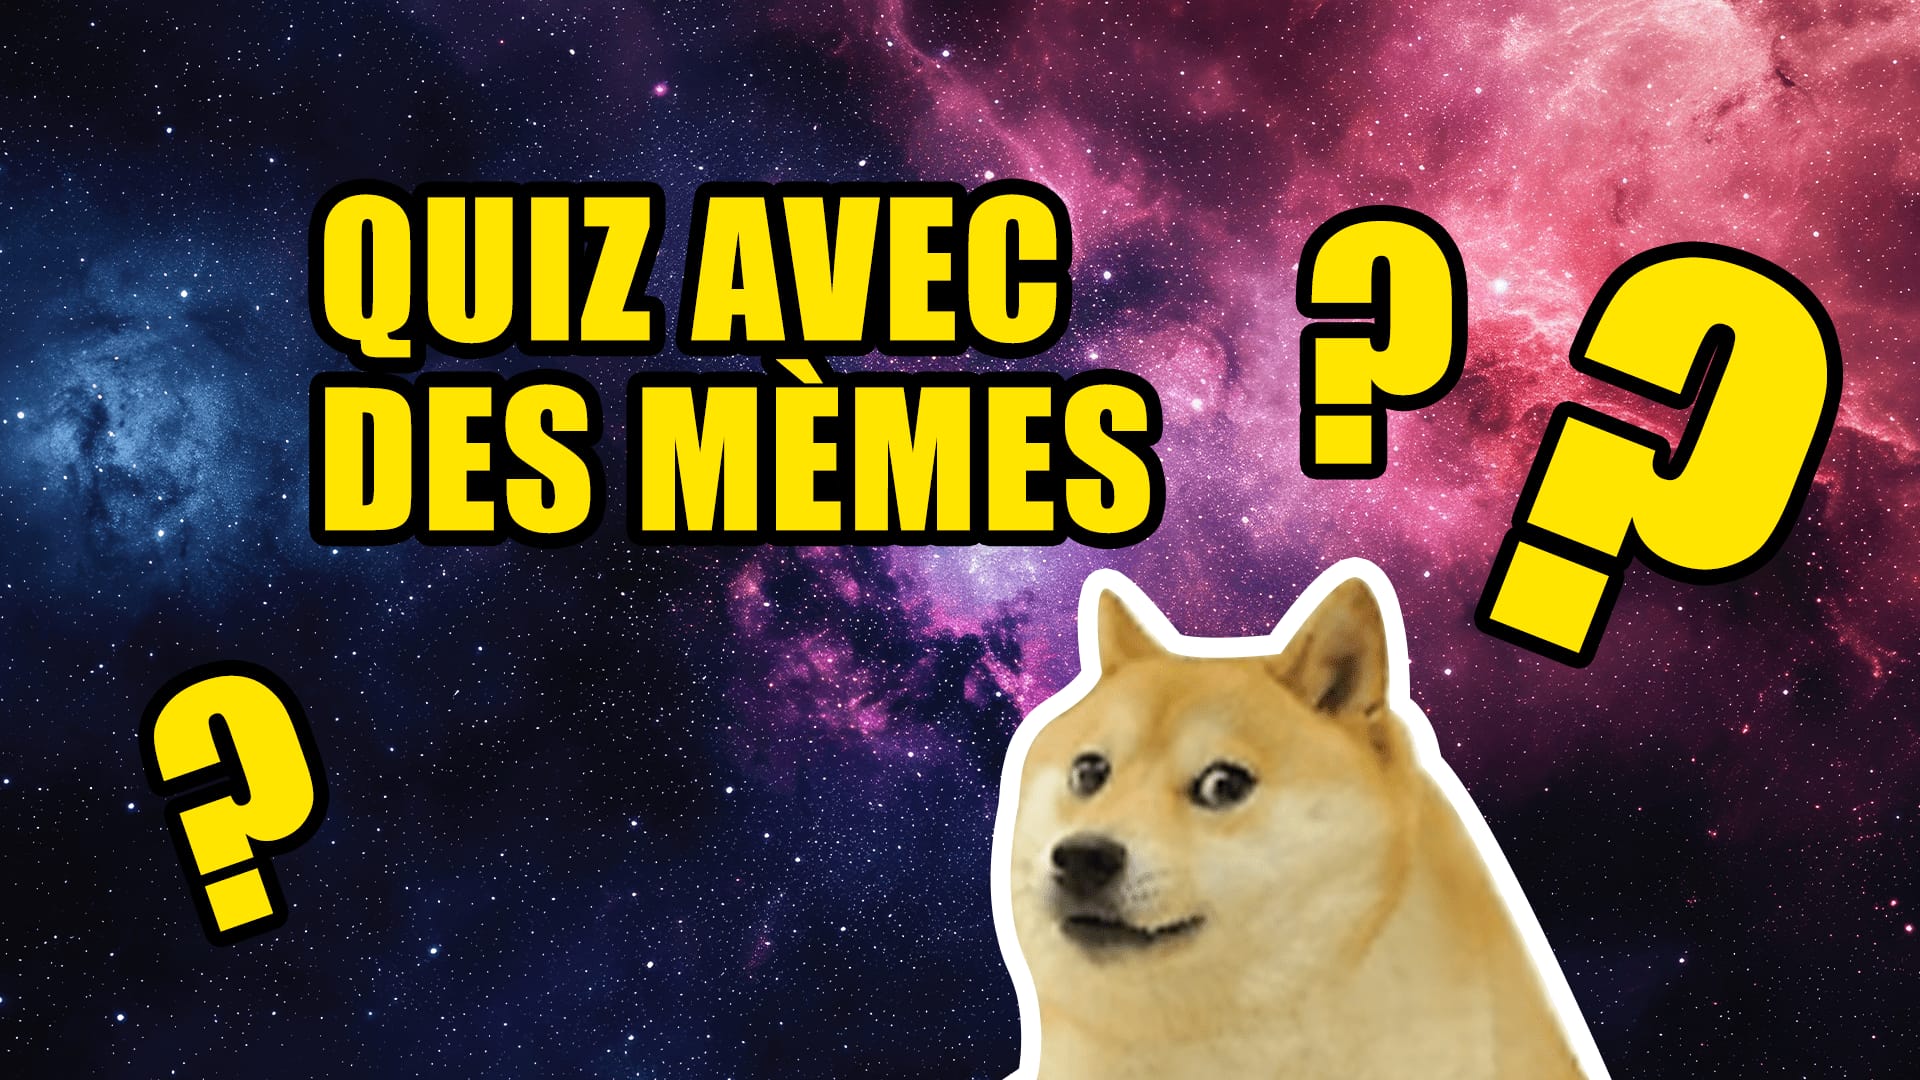 Meme Quiz